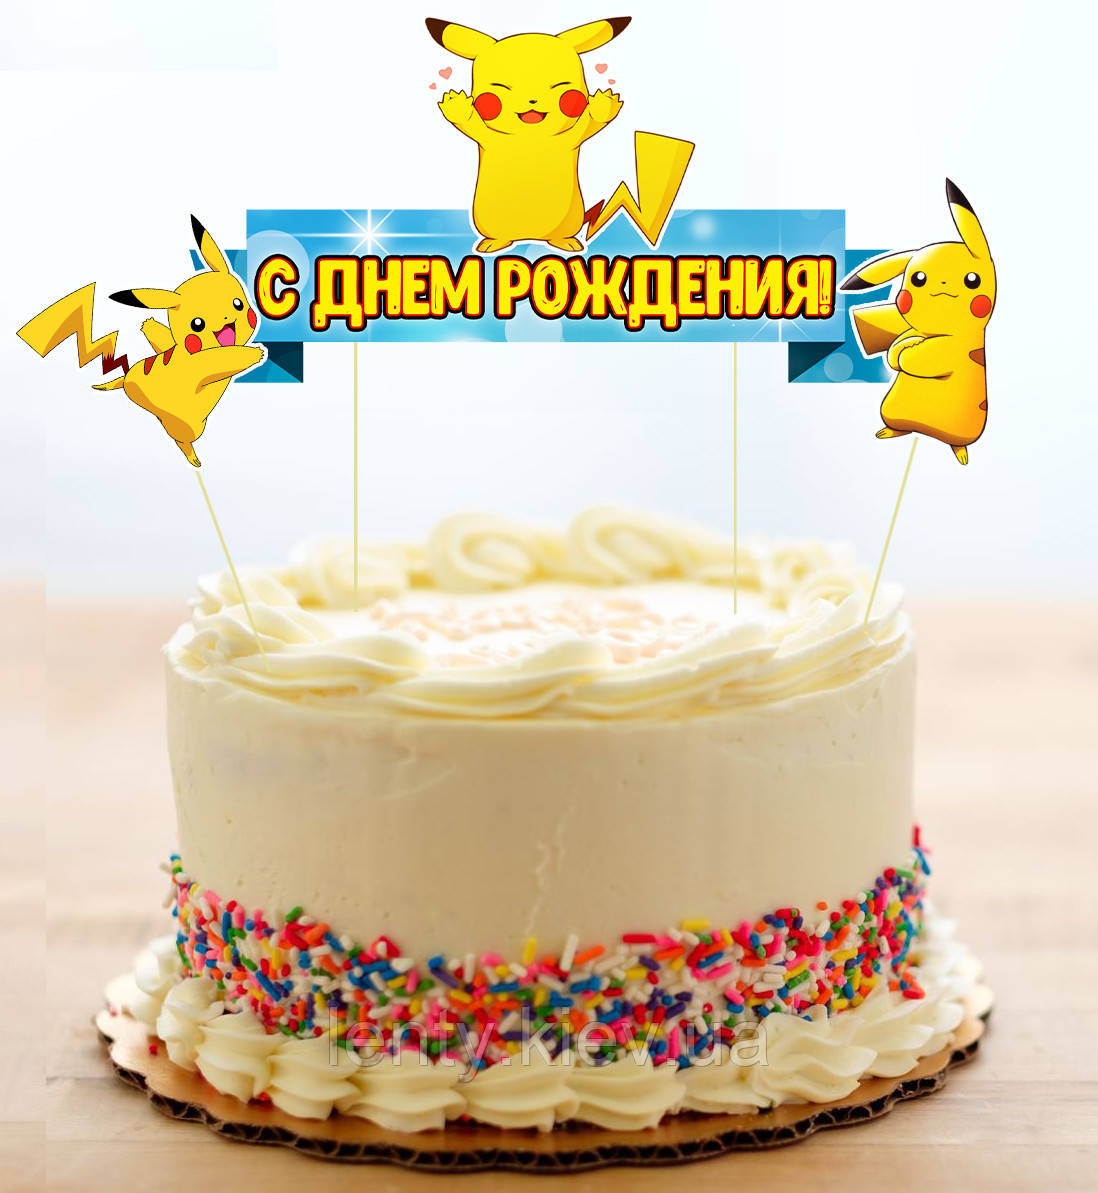 Набір Топперов "Покемон Пікачу" в торт з флажком (КАРТОН)(Російською)